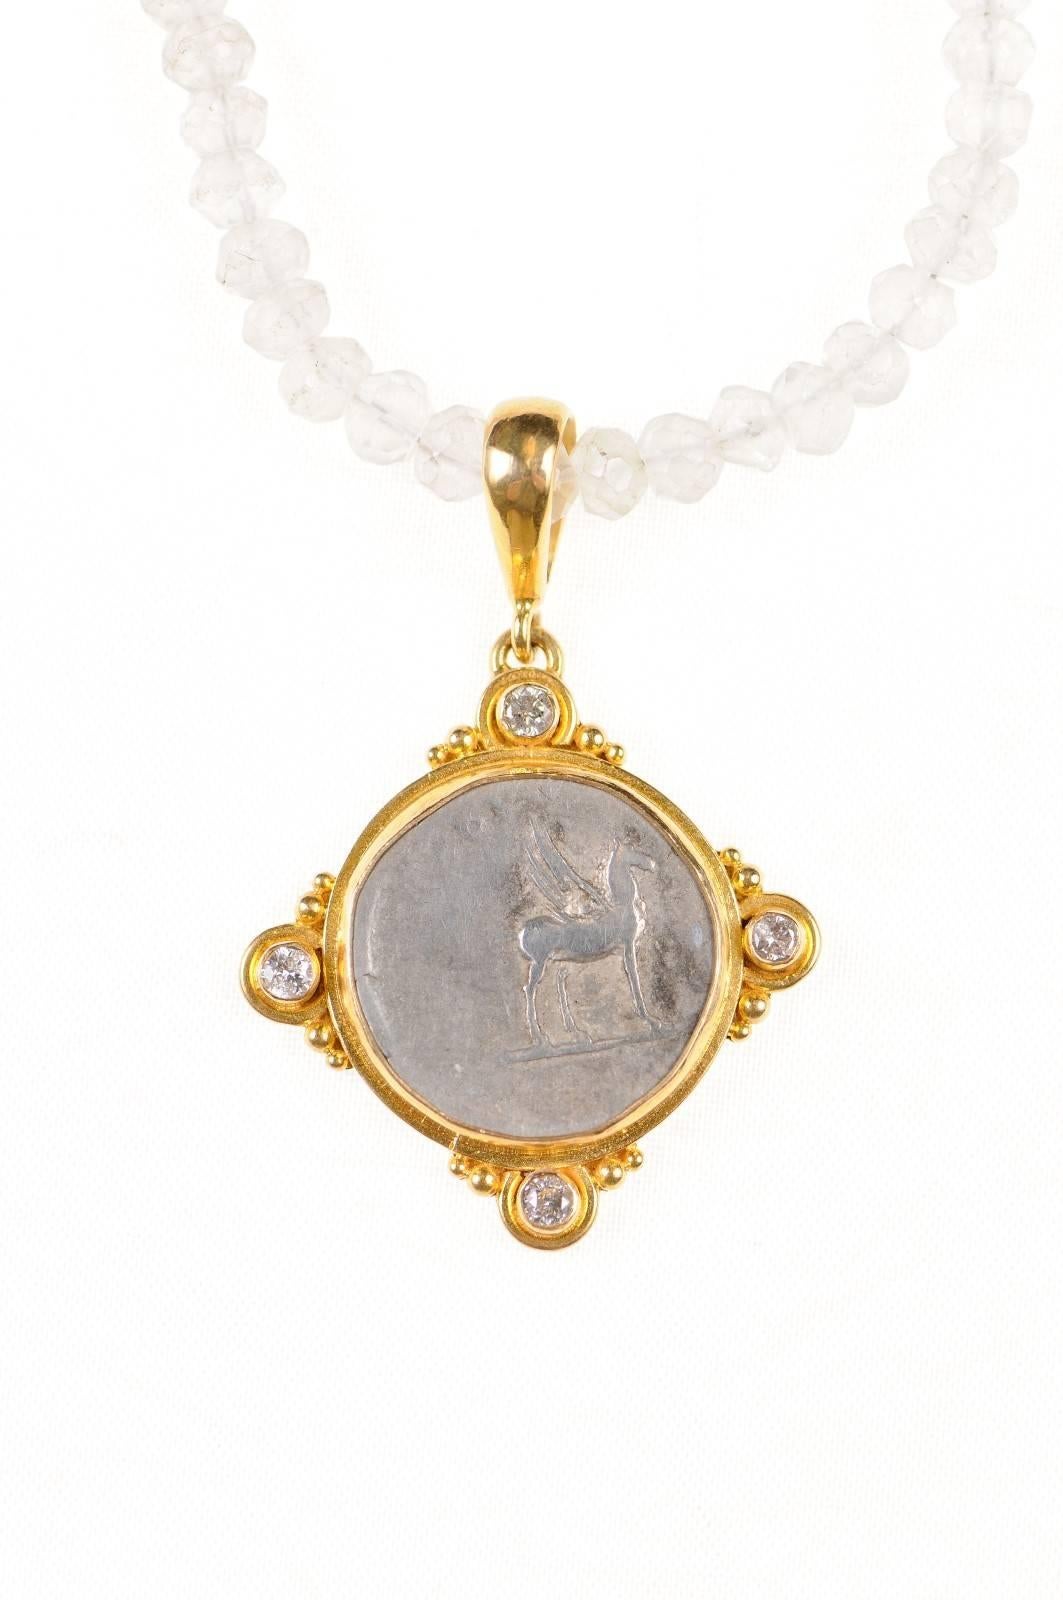 Une authentique pièce de monnaie Denarius en argent de l'Empire romain, Domitien (vers 81-96 ADS), frappée à Rome, sertie dans un chaton en or 22 carats personnalisé, avec une anse en or 22 carats, des perles en or et des accents de diamants en